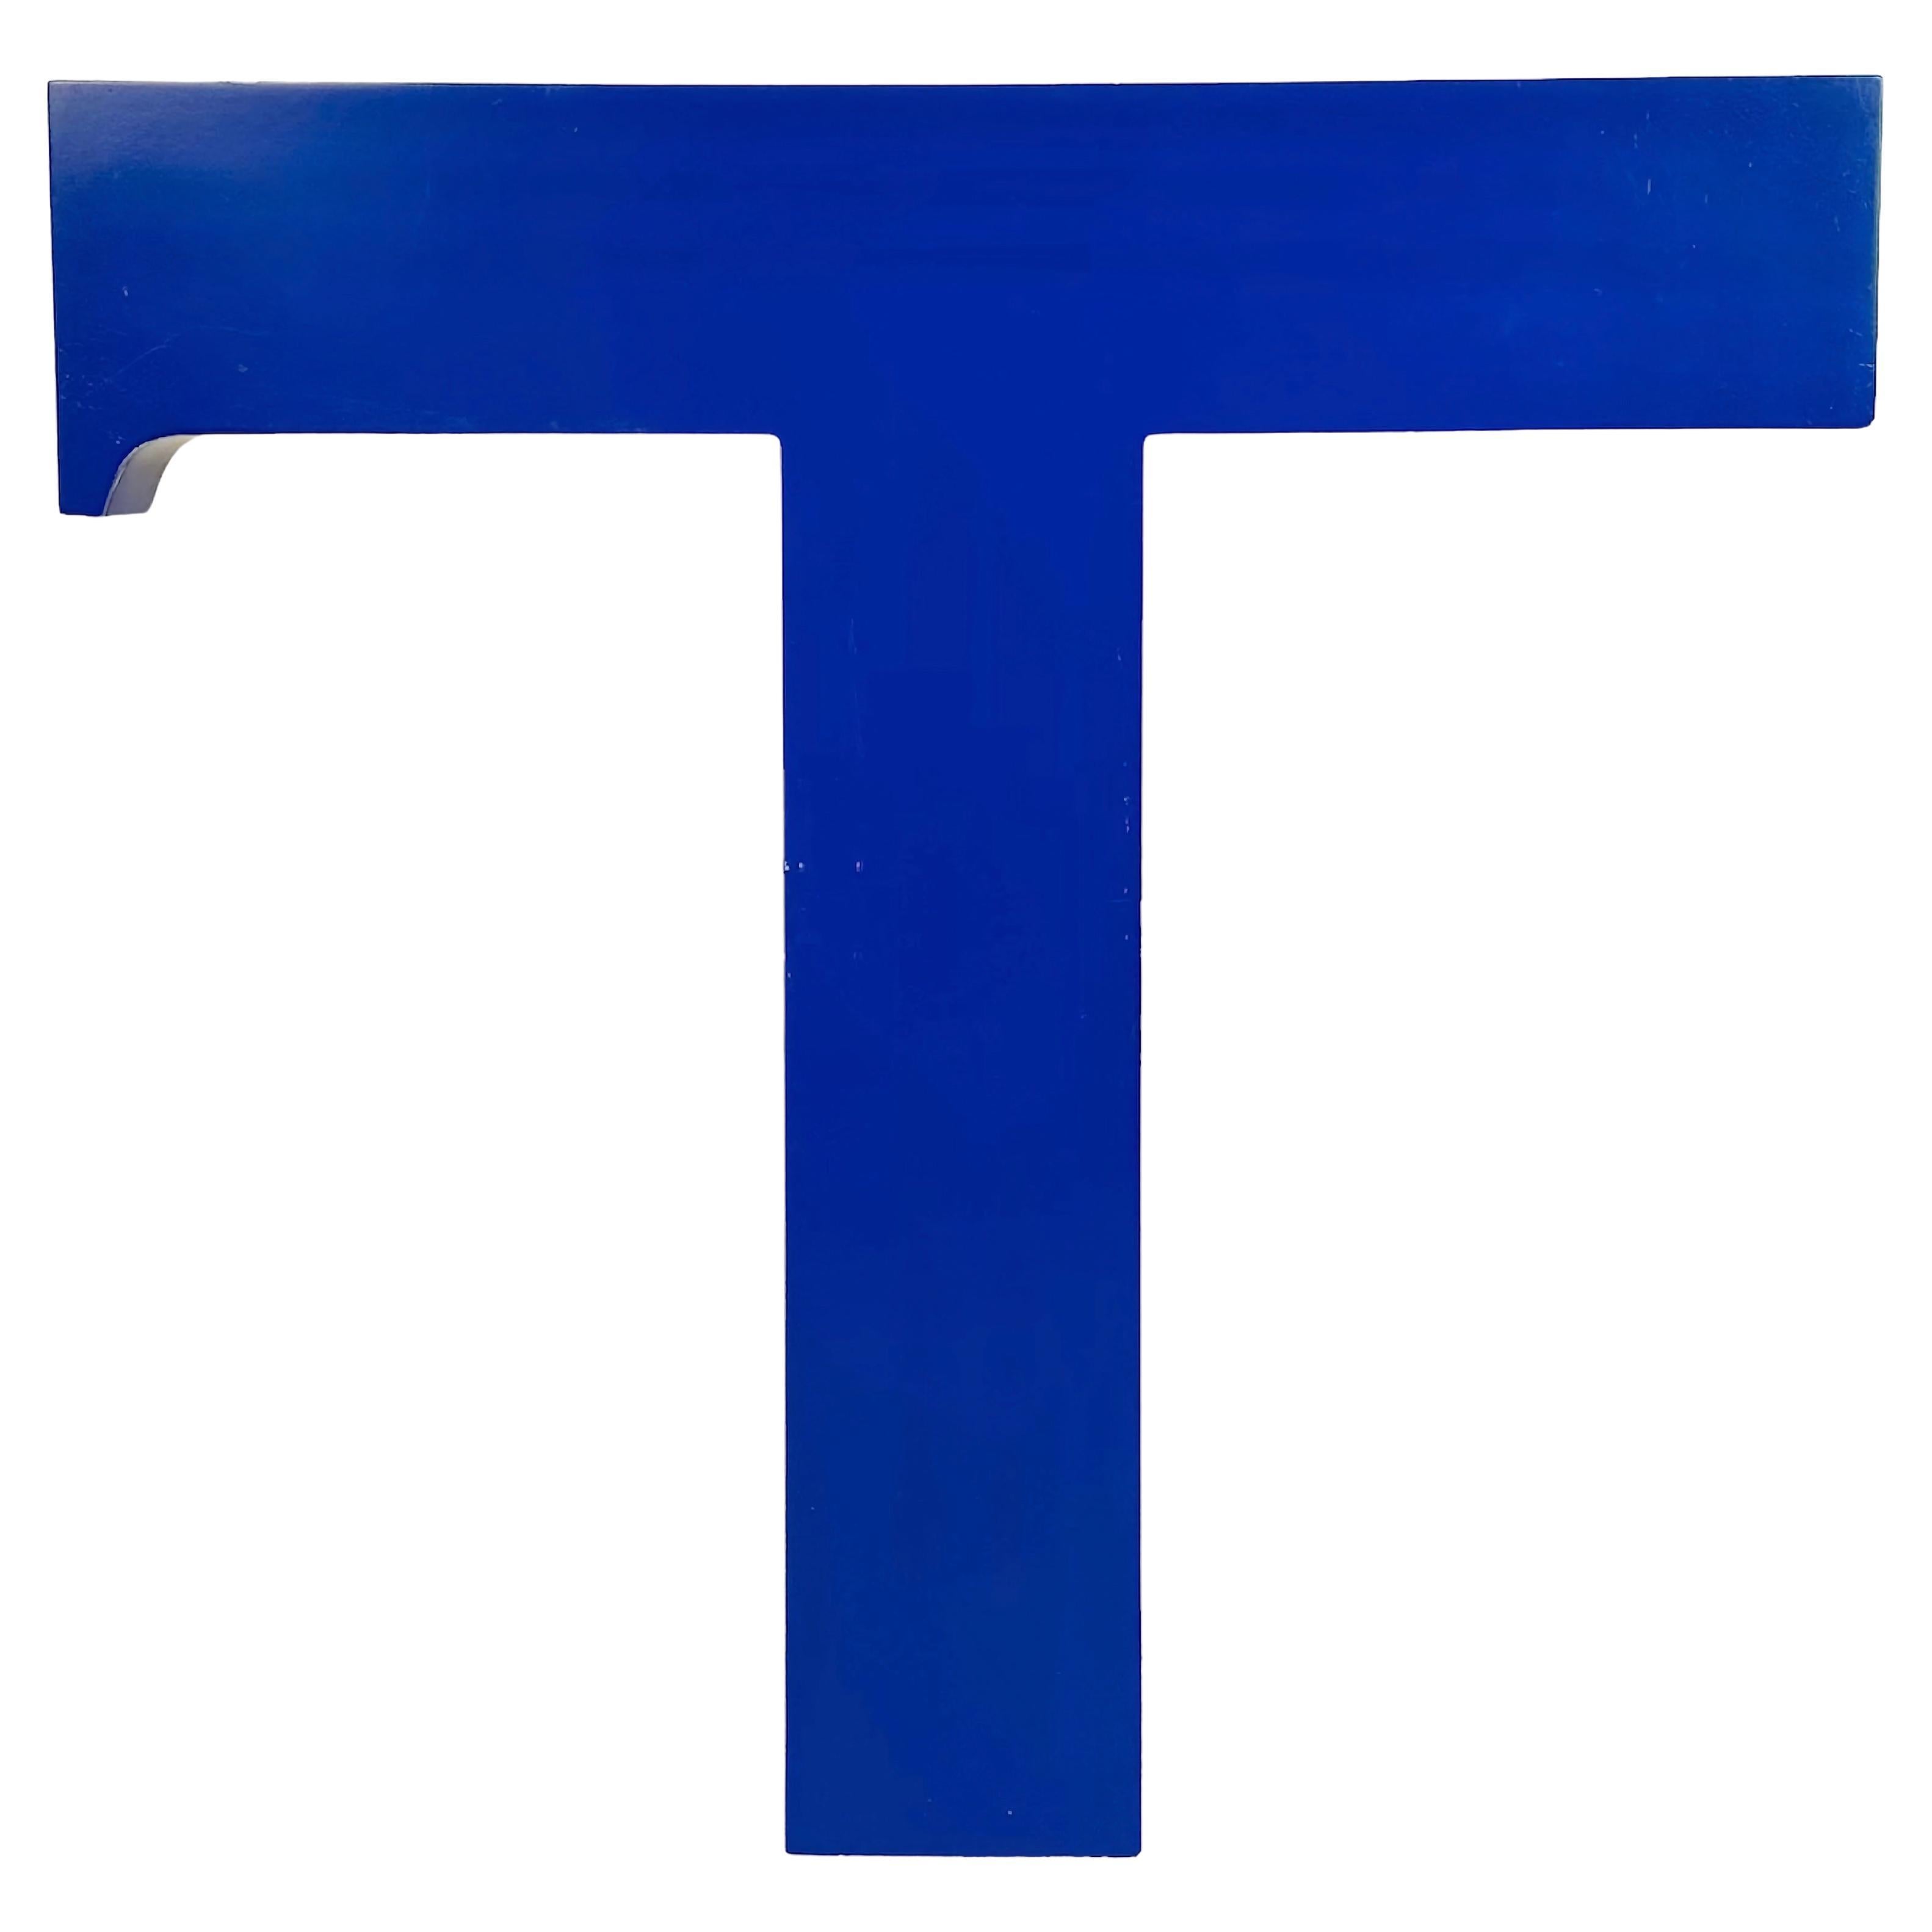 Letter T vintage en facart bleu, années 1970